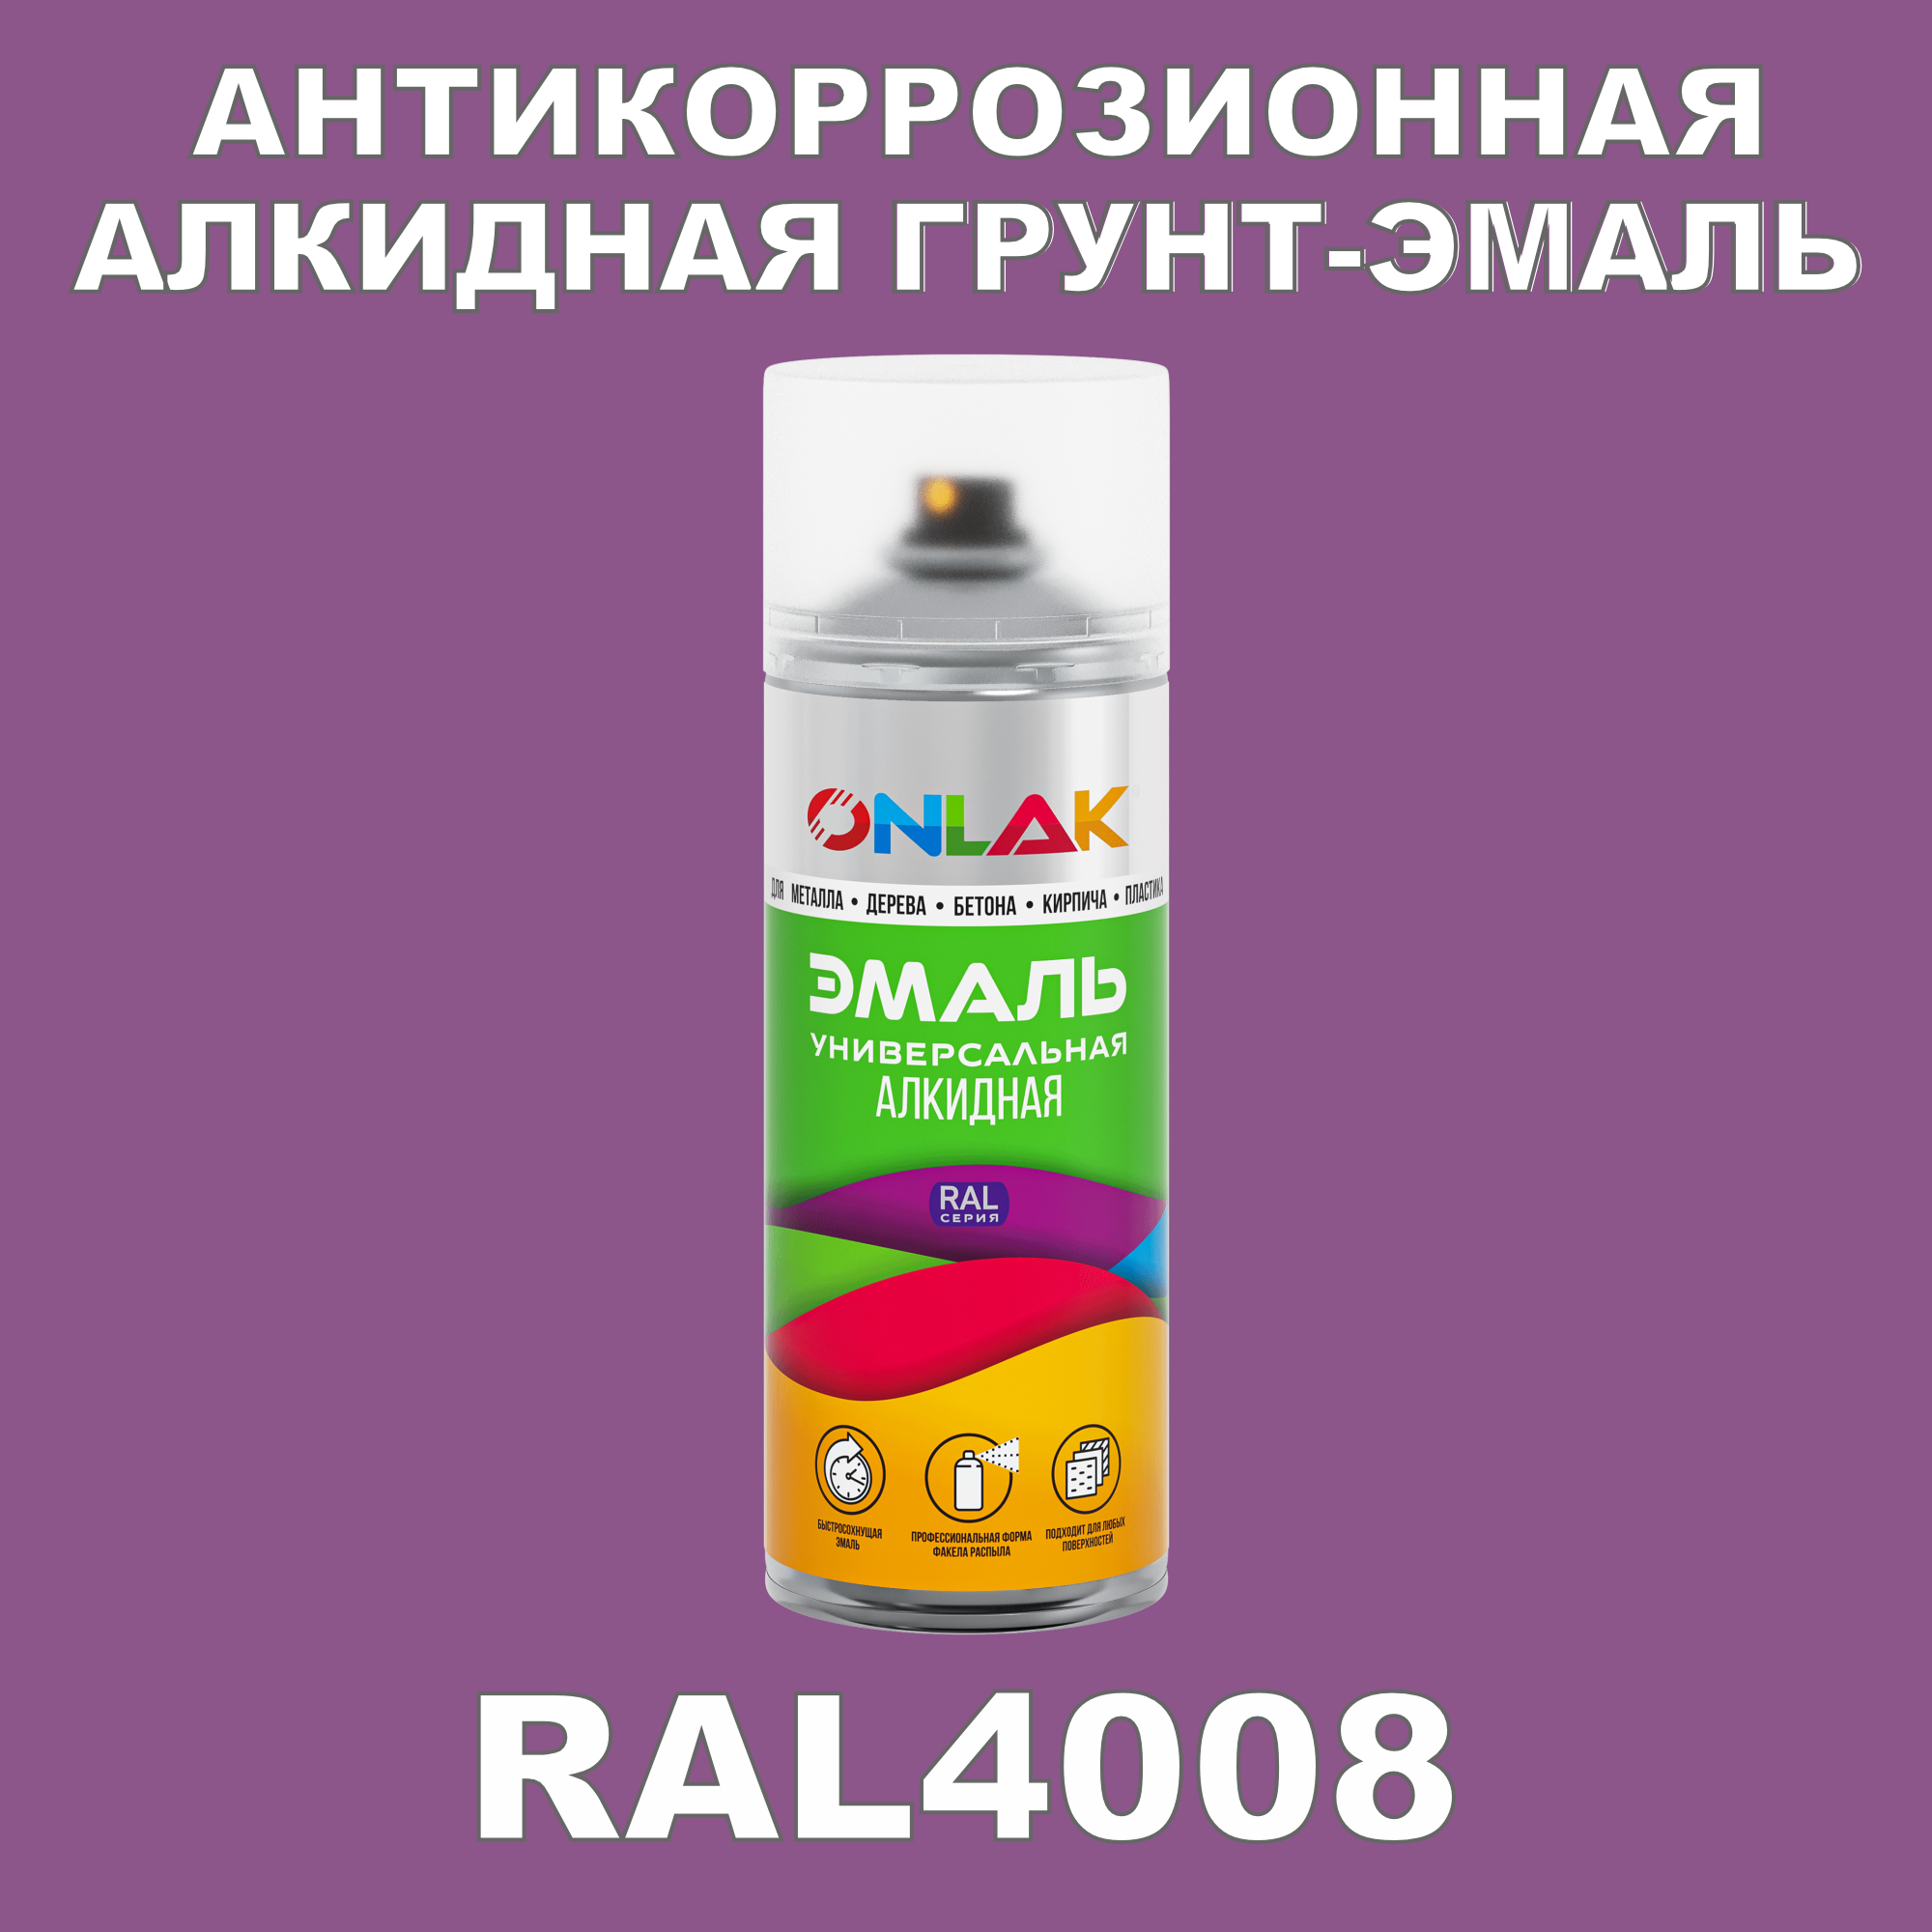 Антикоррозионная грунт-эмаль ONLAK RAL 4008,фиолетовый,610 мл рюкзак детский на молнии 3 наружных кармана цвет фиолетовый